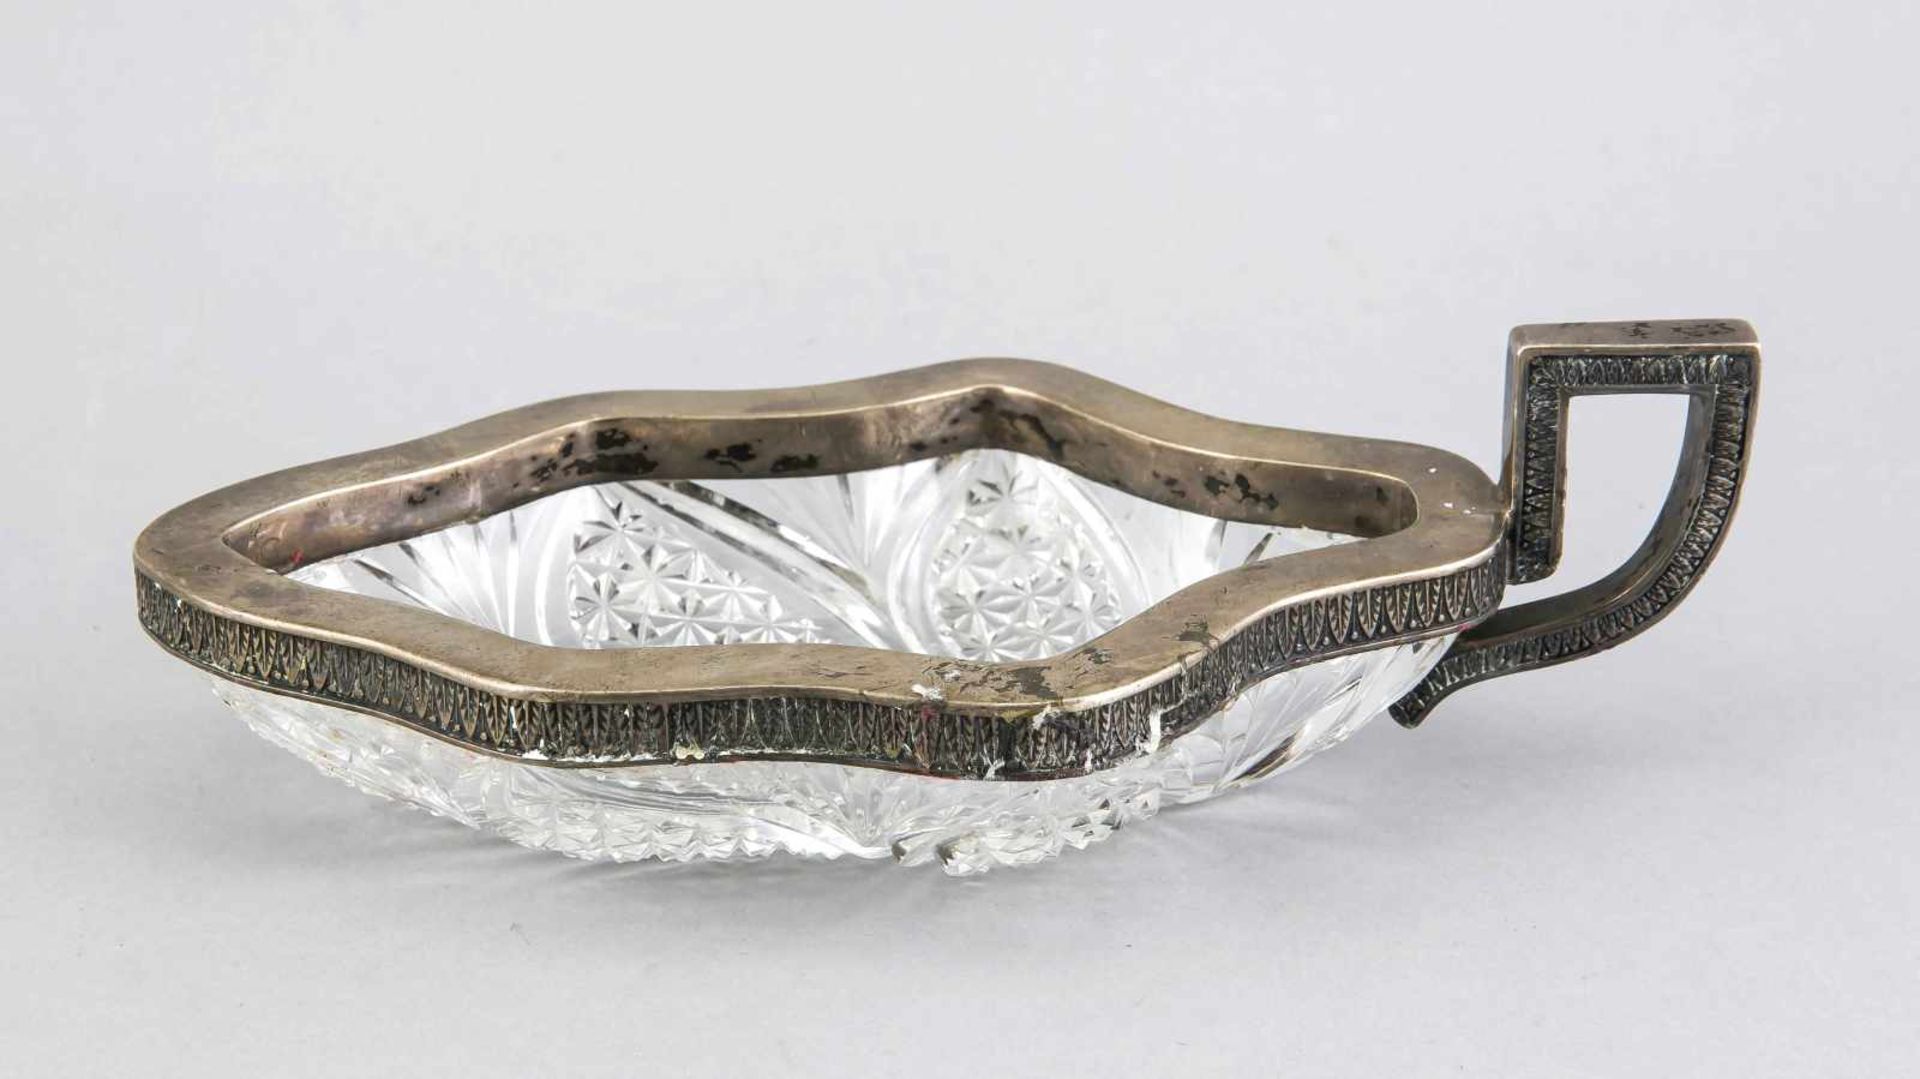 Kristallblattschale mit Silbermontage, wohl Russland um 1900, Silber geprüft, Randmontage mit